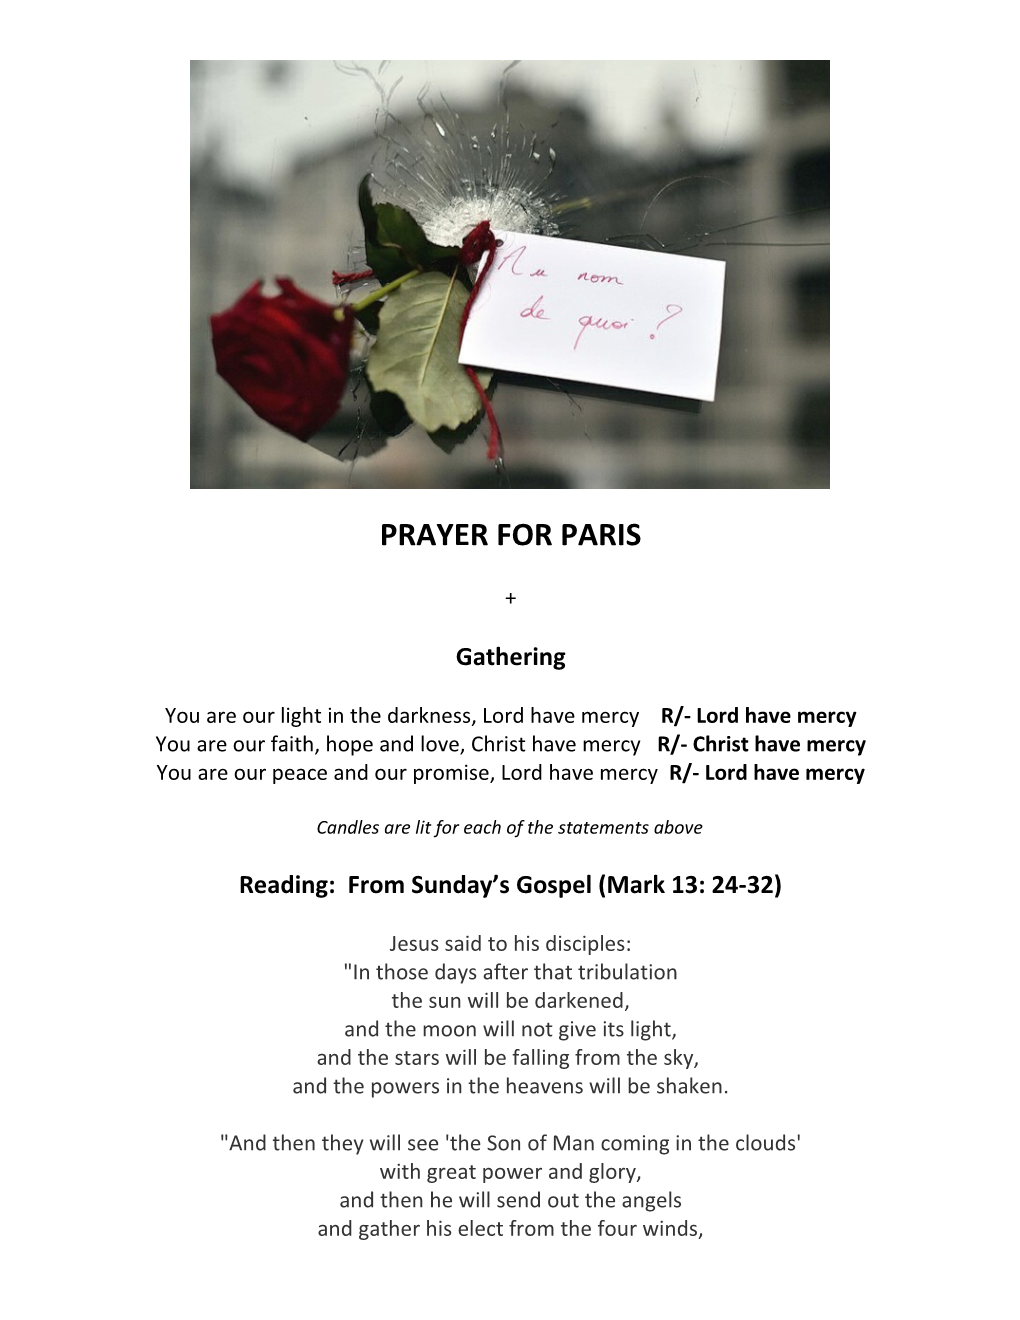 Prayer for Paris